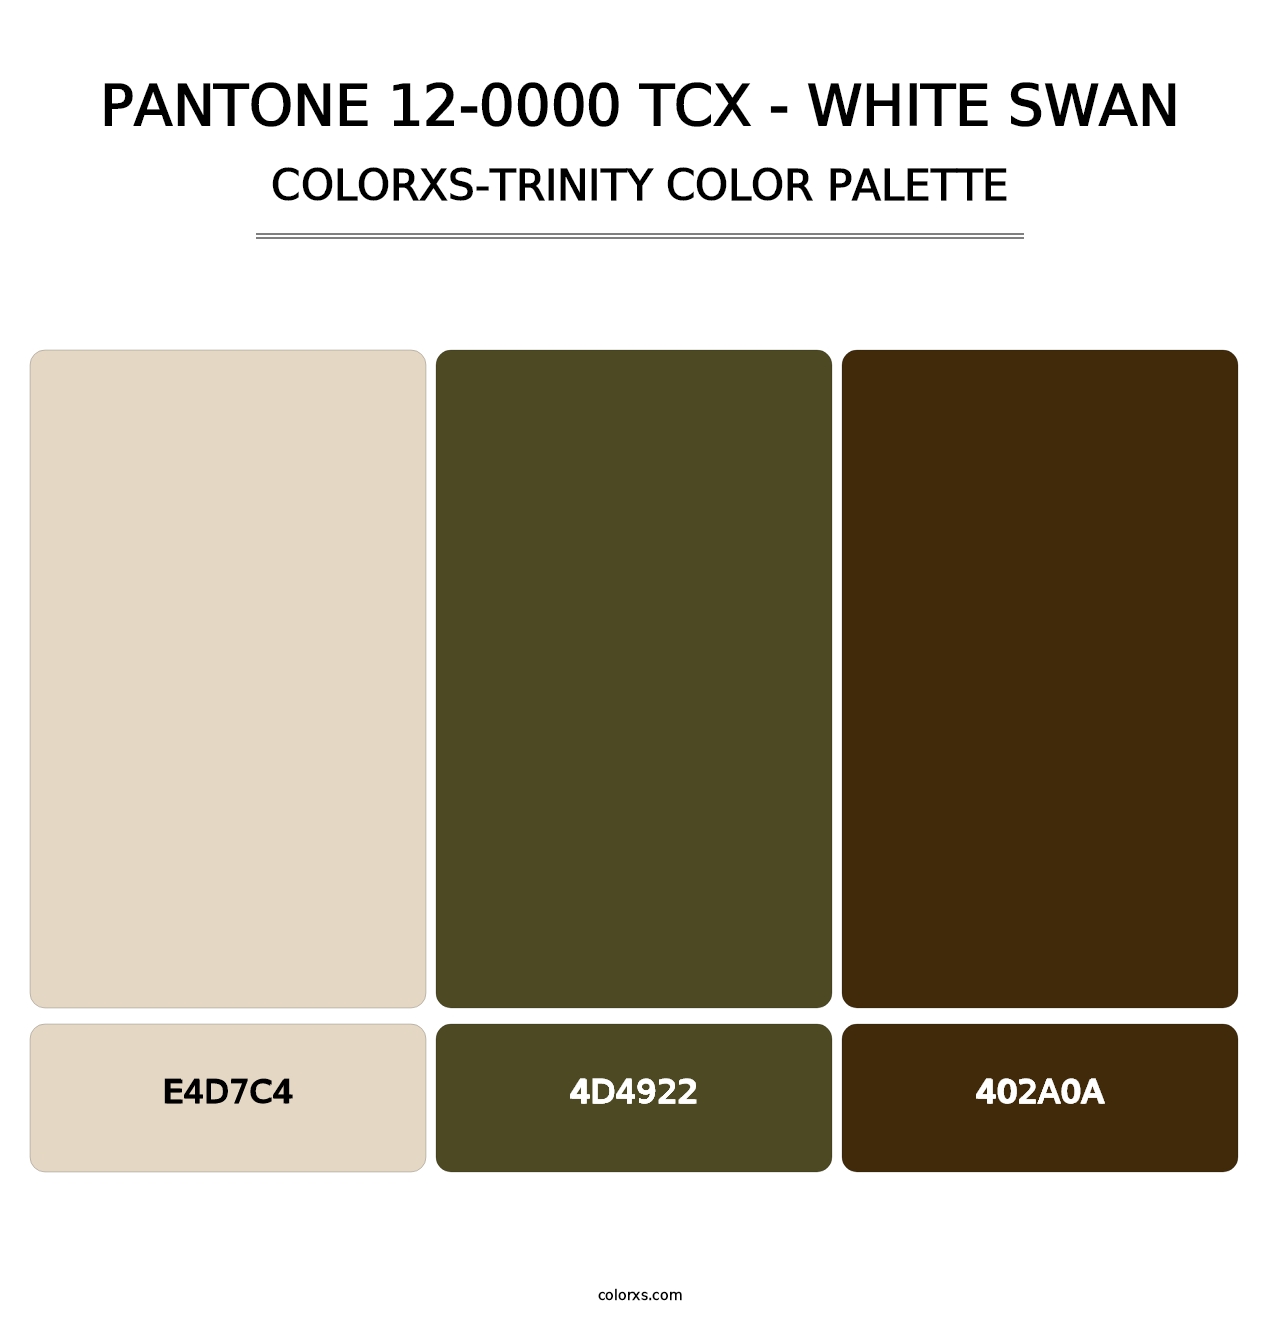 PANTONE 12-0000 TCX - White Swan - Colorxs Trinity Palette